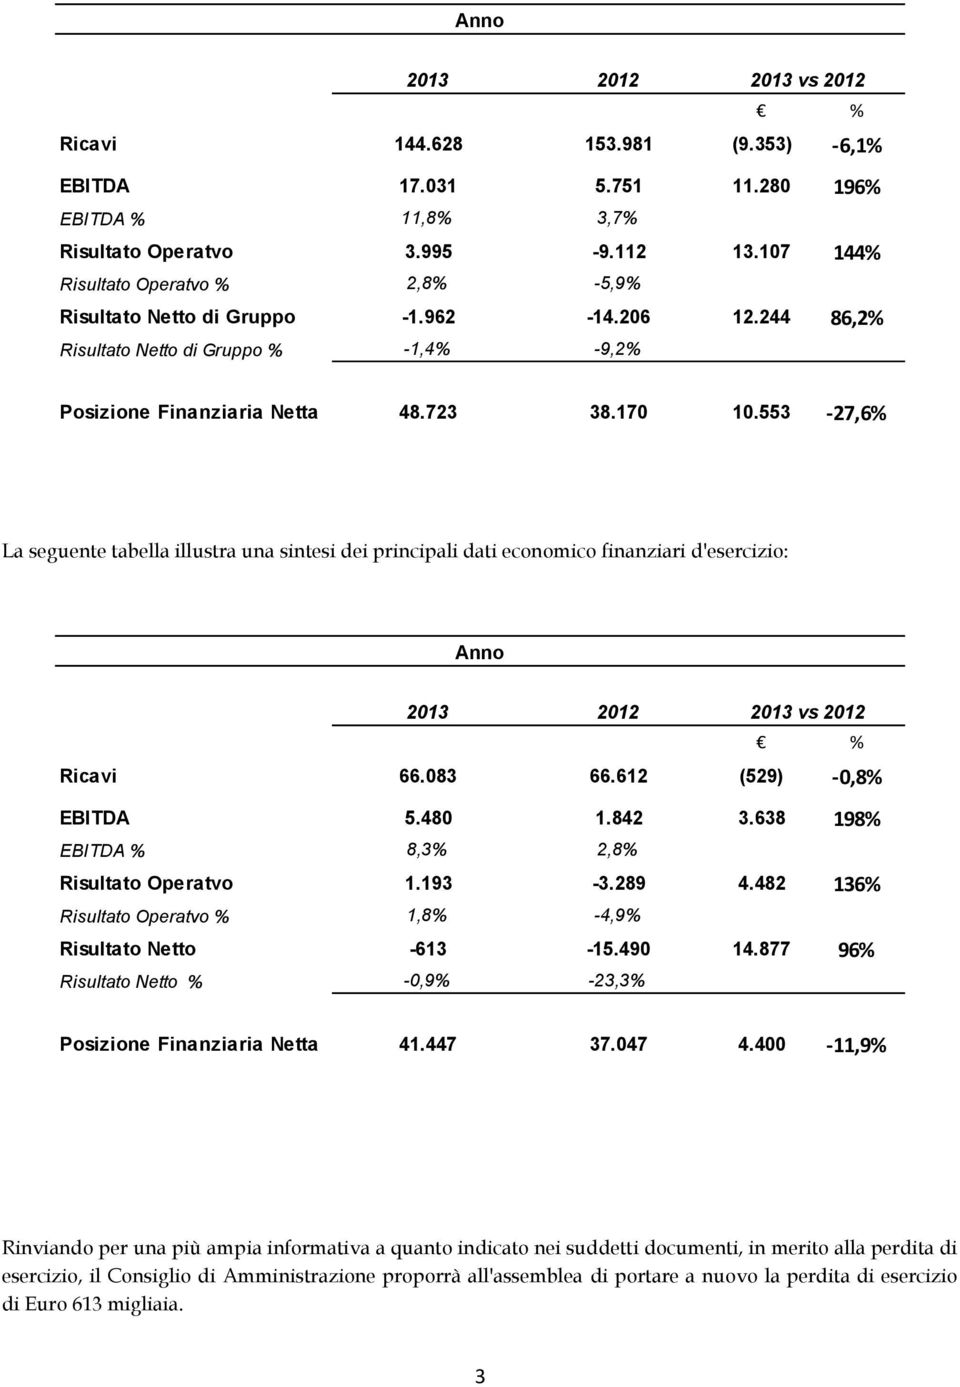 553-27,6% La seguente tabella illustra una sintesi dei principali dati economico finanziari d'esercizio: Anno 2013 2012 2013 vs 2012 % Ricavi 66.083 66.612 (529) -0,8% EBITDA 5.480 1.842 3.